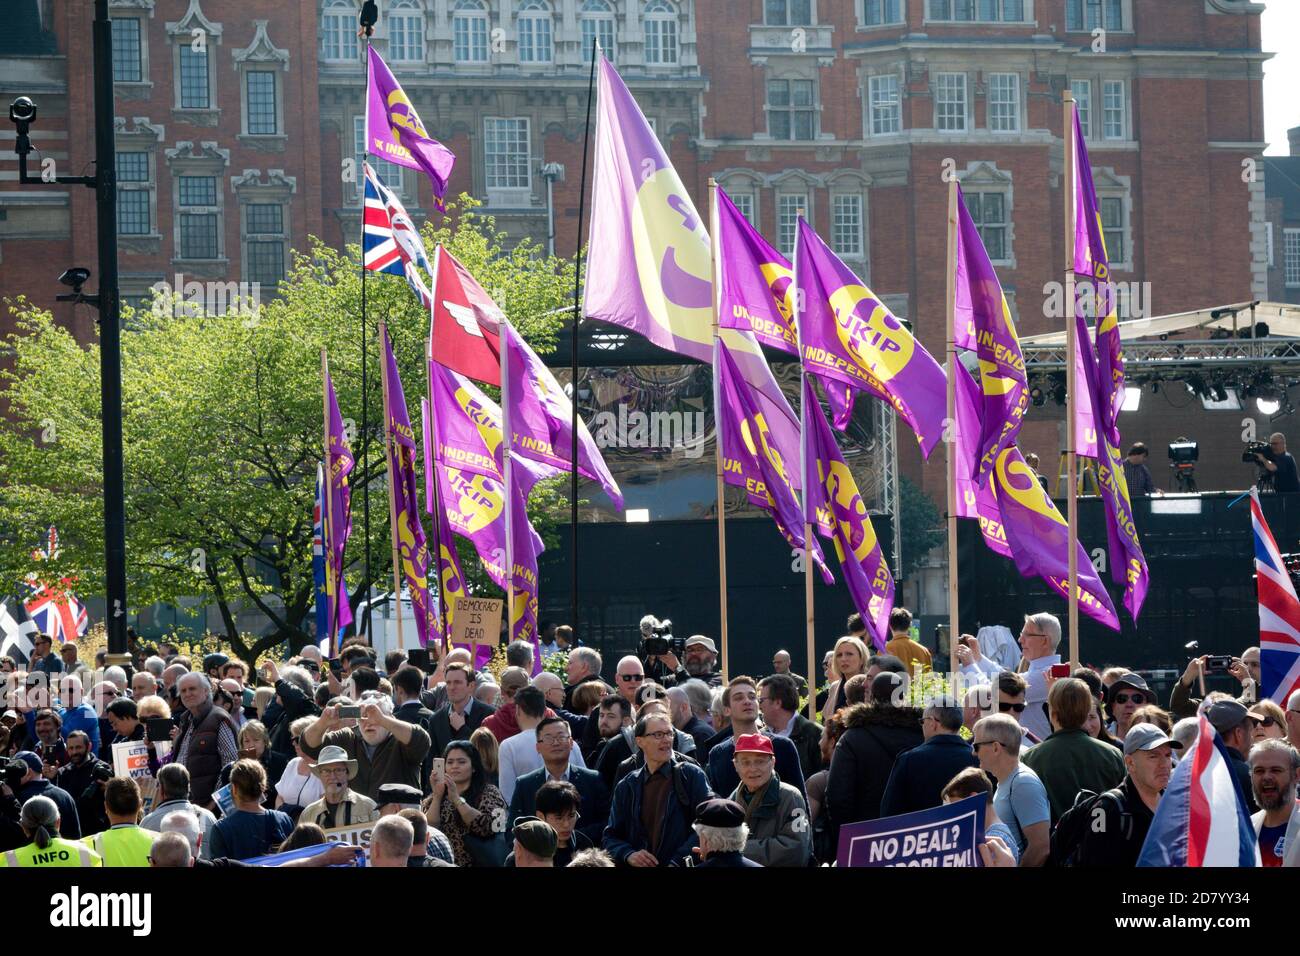 Londra, Regno Unito, 29 marzo 2019:- i marchers Pro Brexit fuori dal Parlamento britannico il giorno in cui il Regno Unito avrebbe dovuto lasciare l’UE Foto Stock